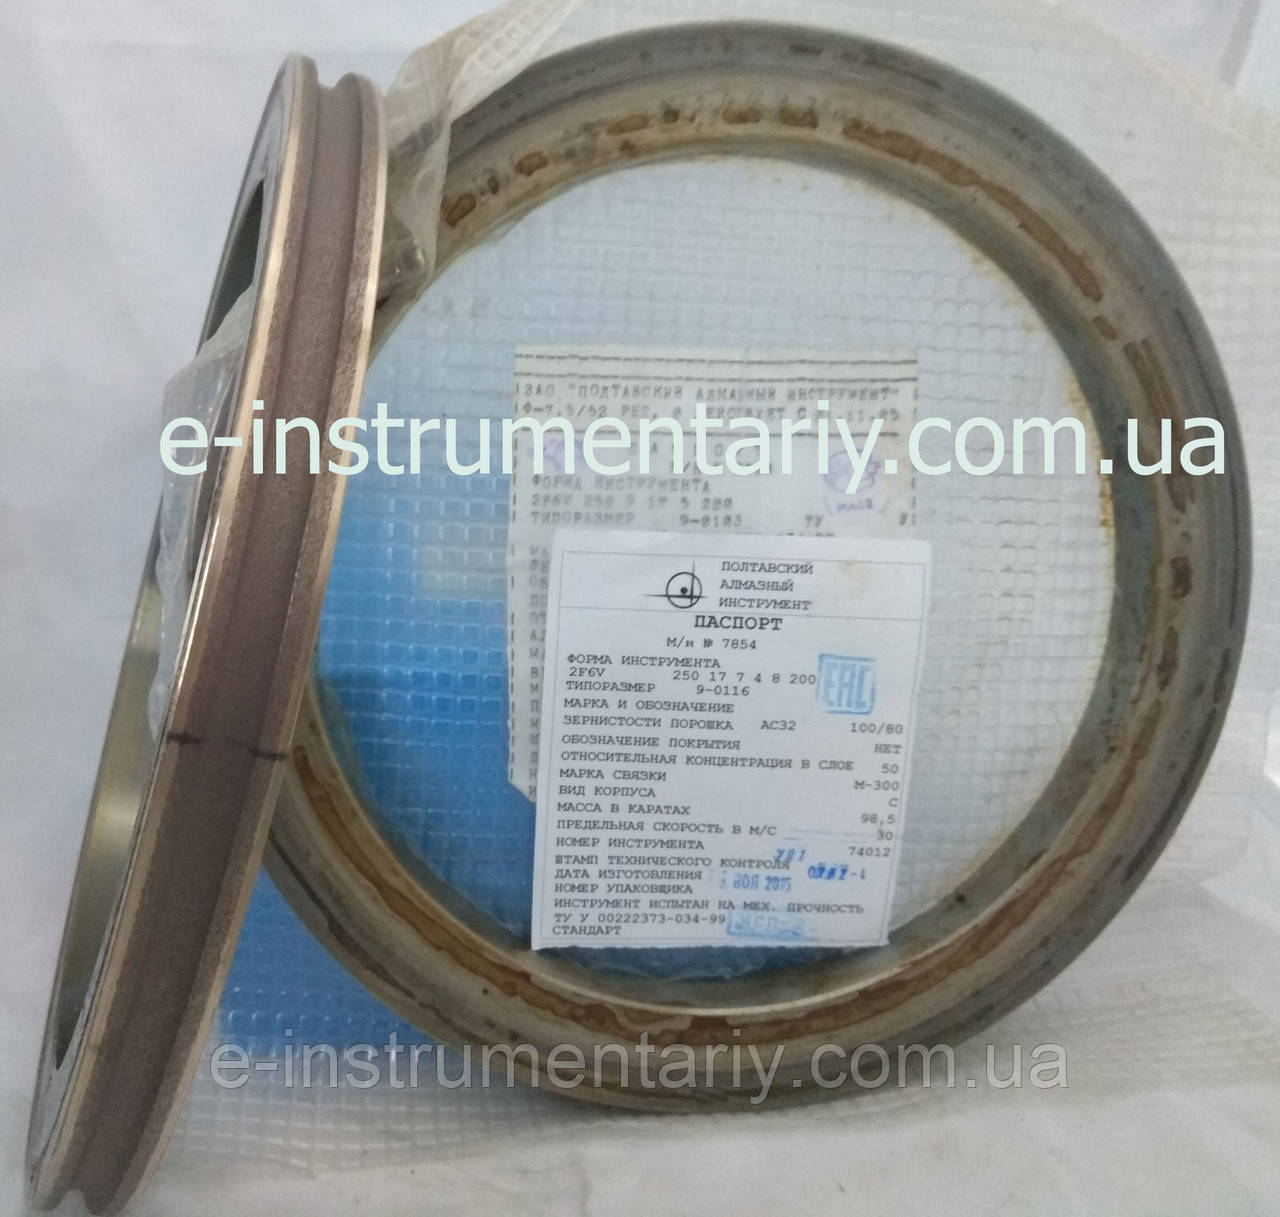 Алмазный круг для обработки стекла(2F6V)R4 250х17х7хR4х200  АС32 связка М-300